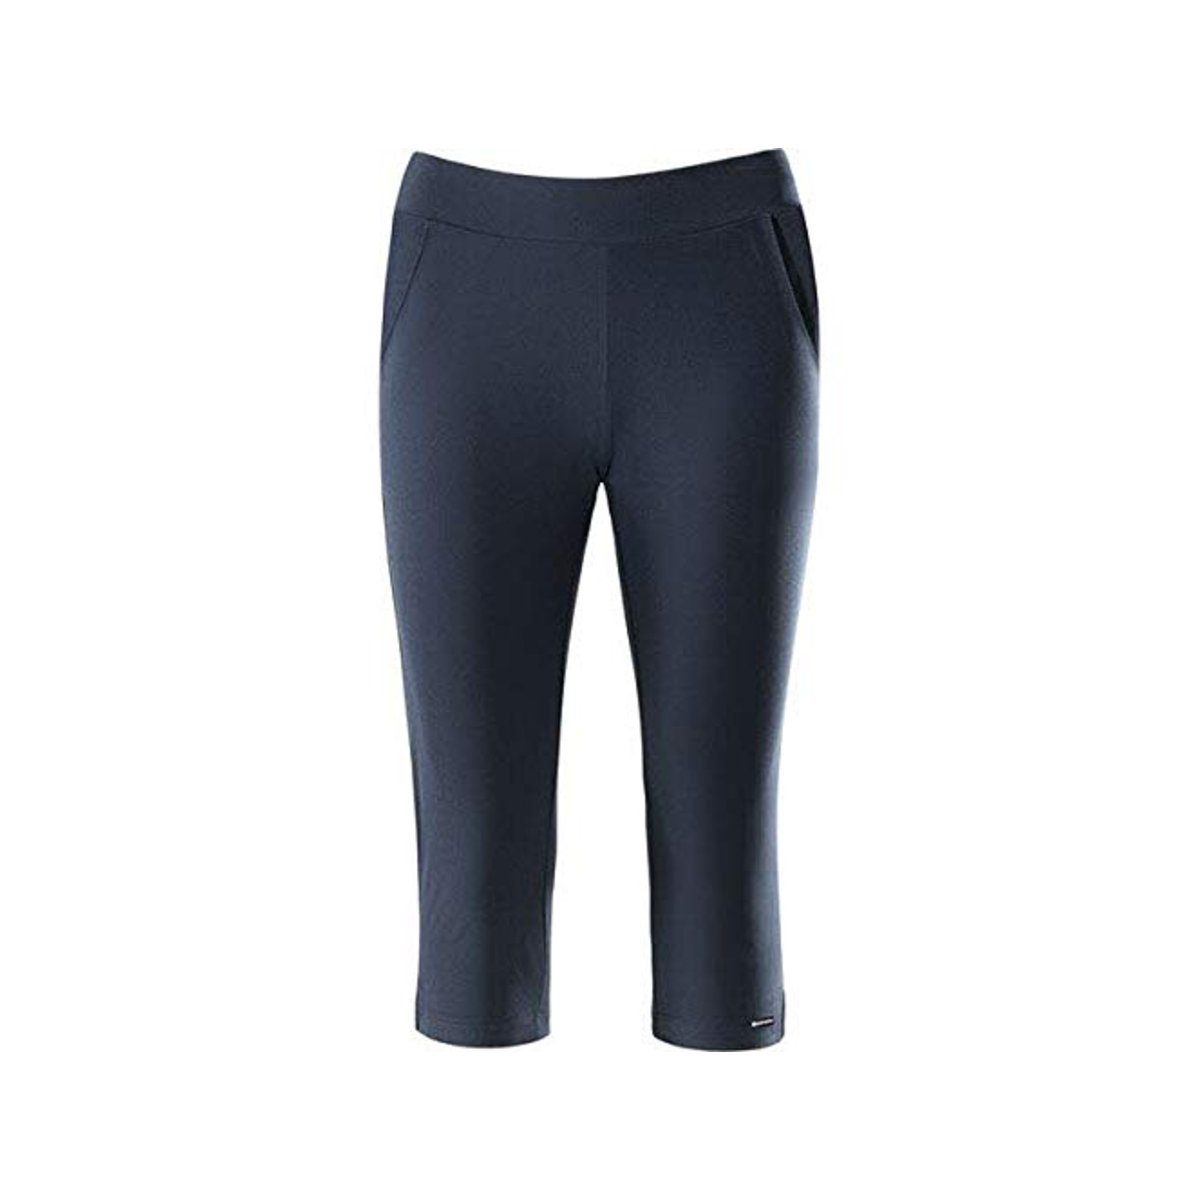 SCHNEIDER Sportswear 7/8-Hose uni regular (1-tlg., keine Angabe) 798 dunkelblau